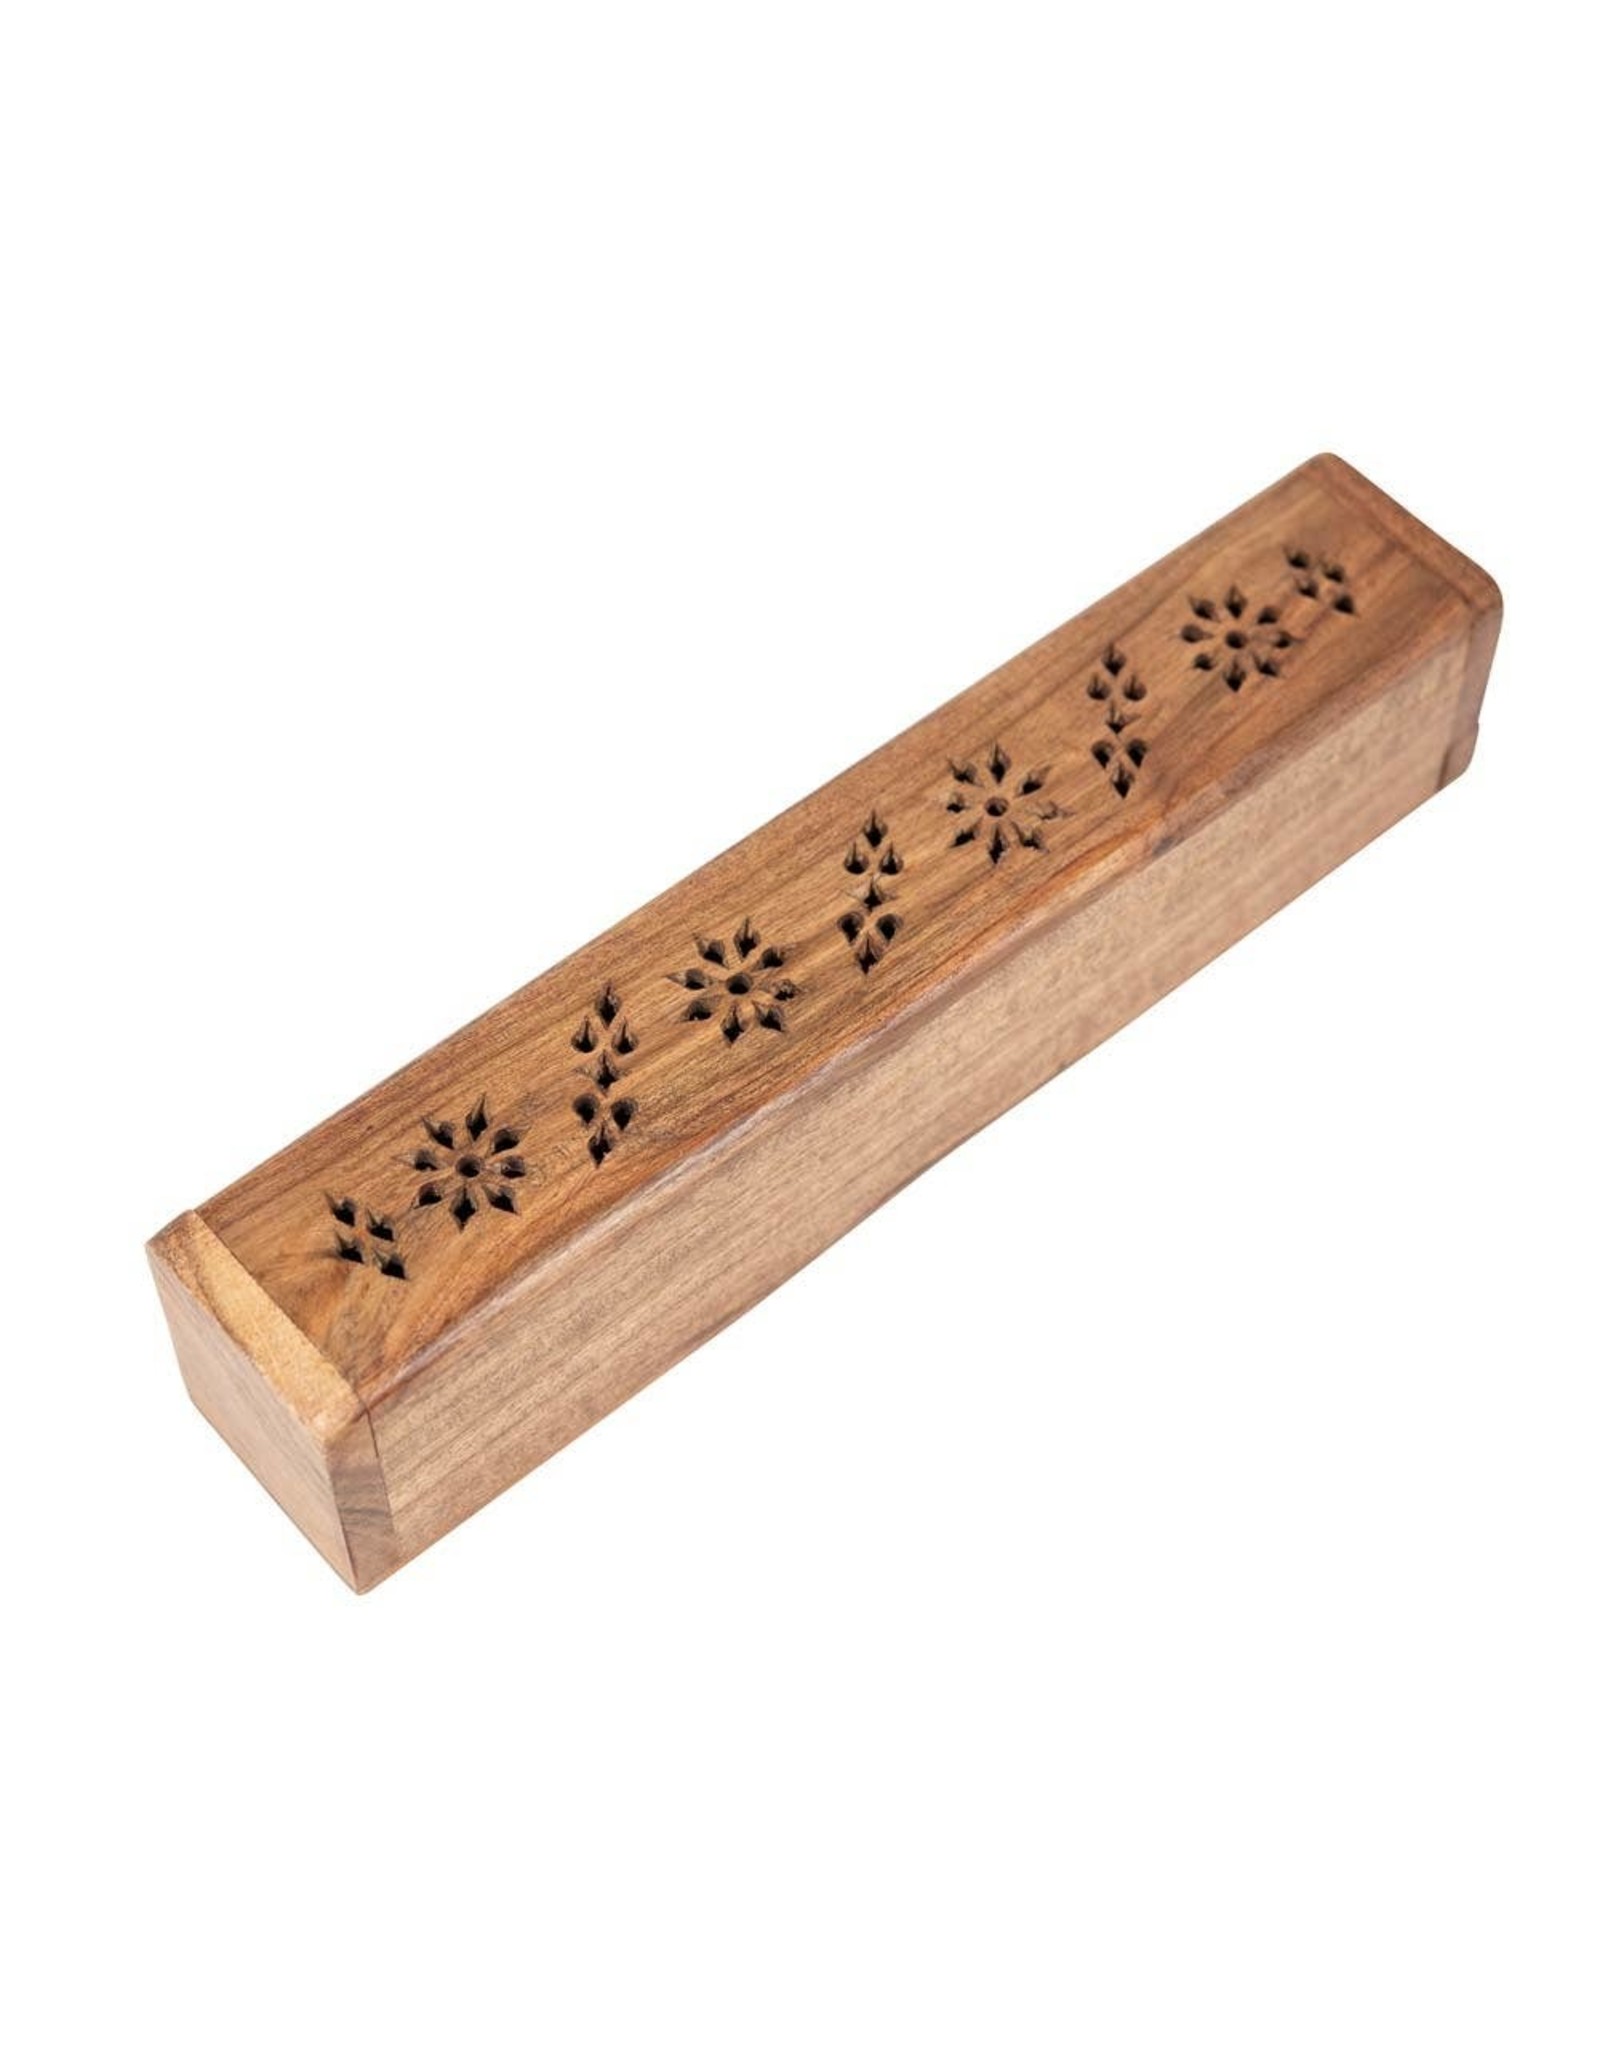 Trade roots Acacia Wood Incense Box, India